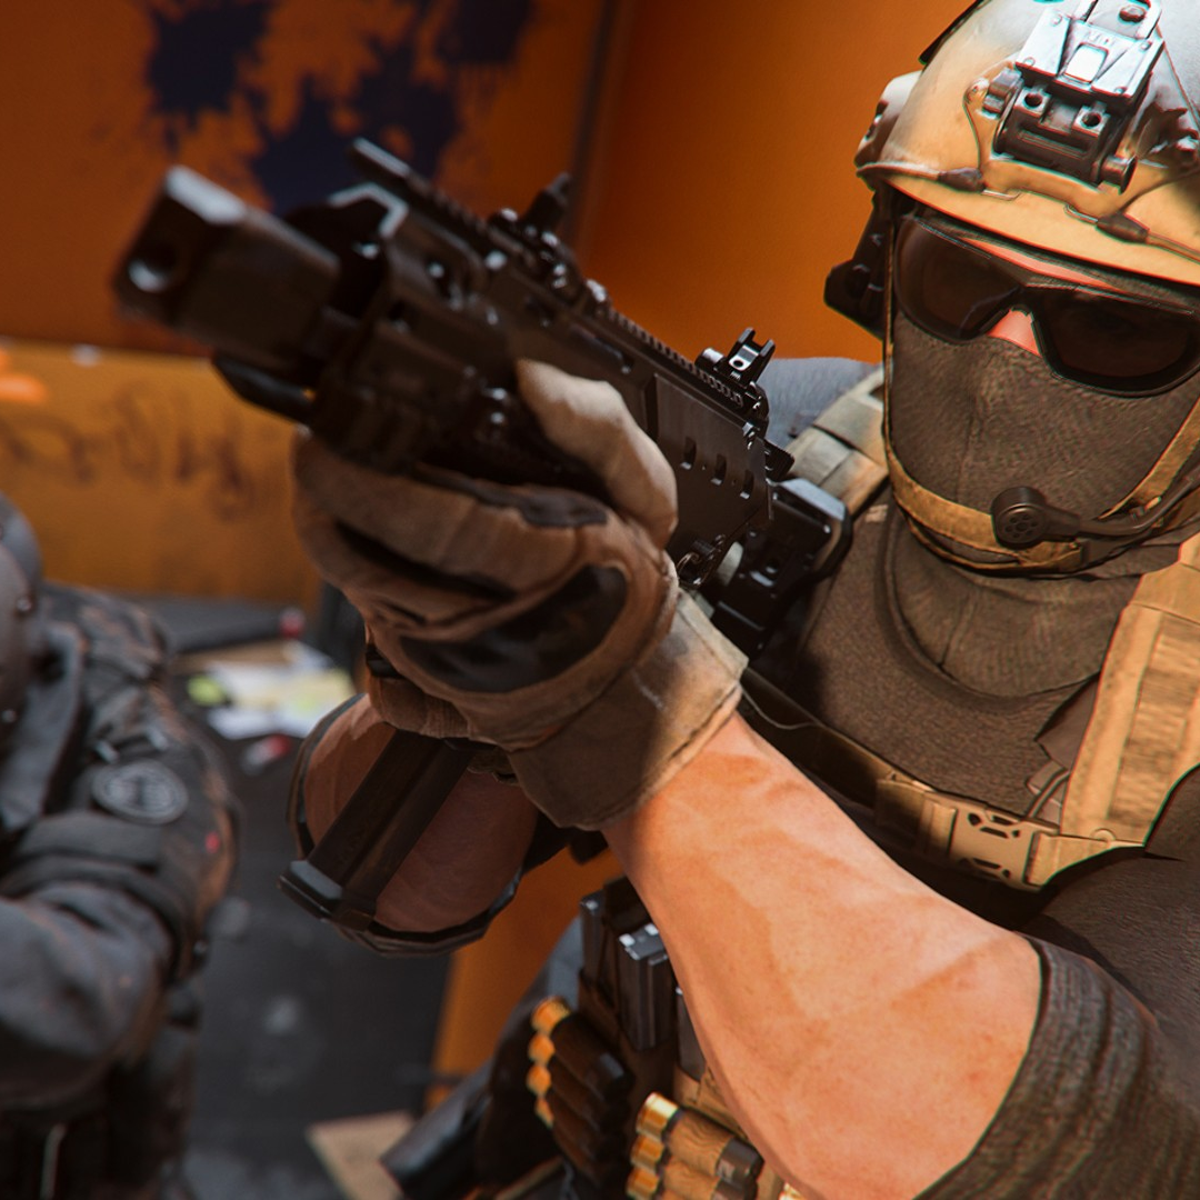 Recent Steam Update Breaks Modern Warfare 2 Multiplayer